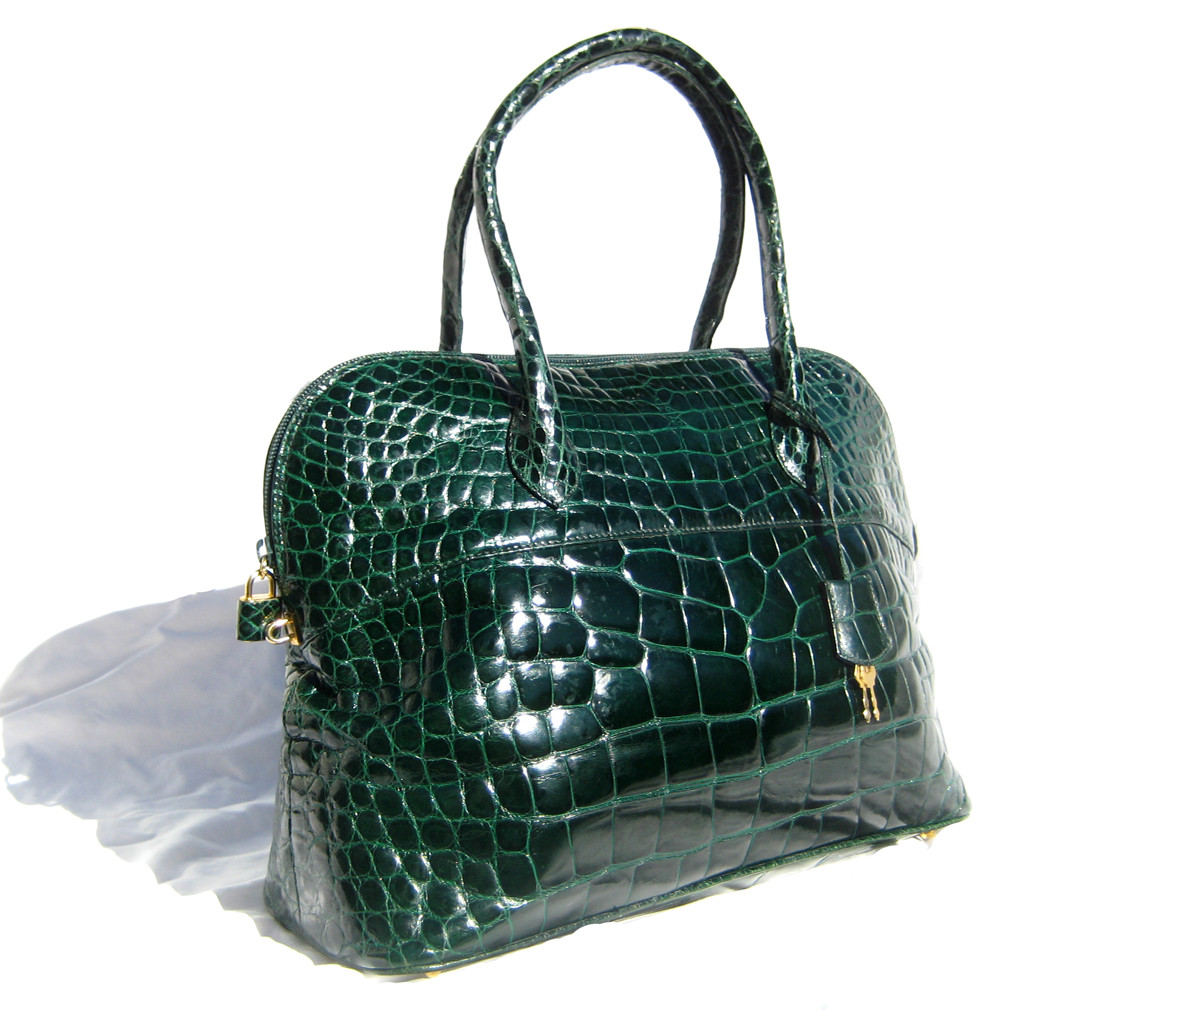 XL 13 x 10 BLACK Early 2000's Alligator Belly Skin KELLY Bag SATCHEL Bag -  Hermes Style! - Vintage Skins